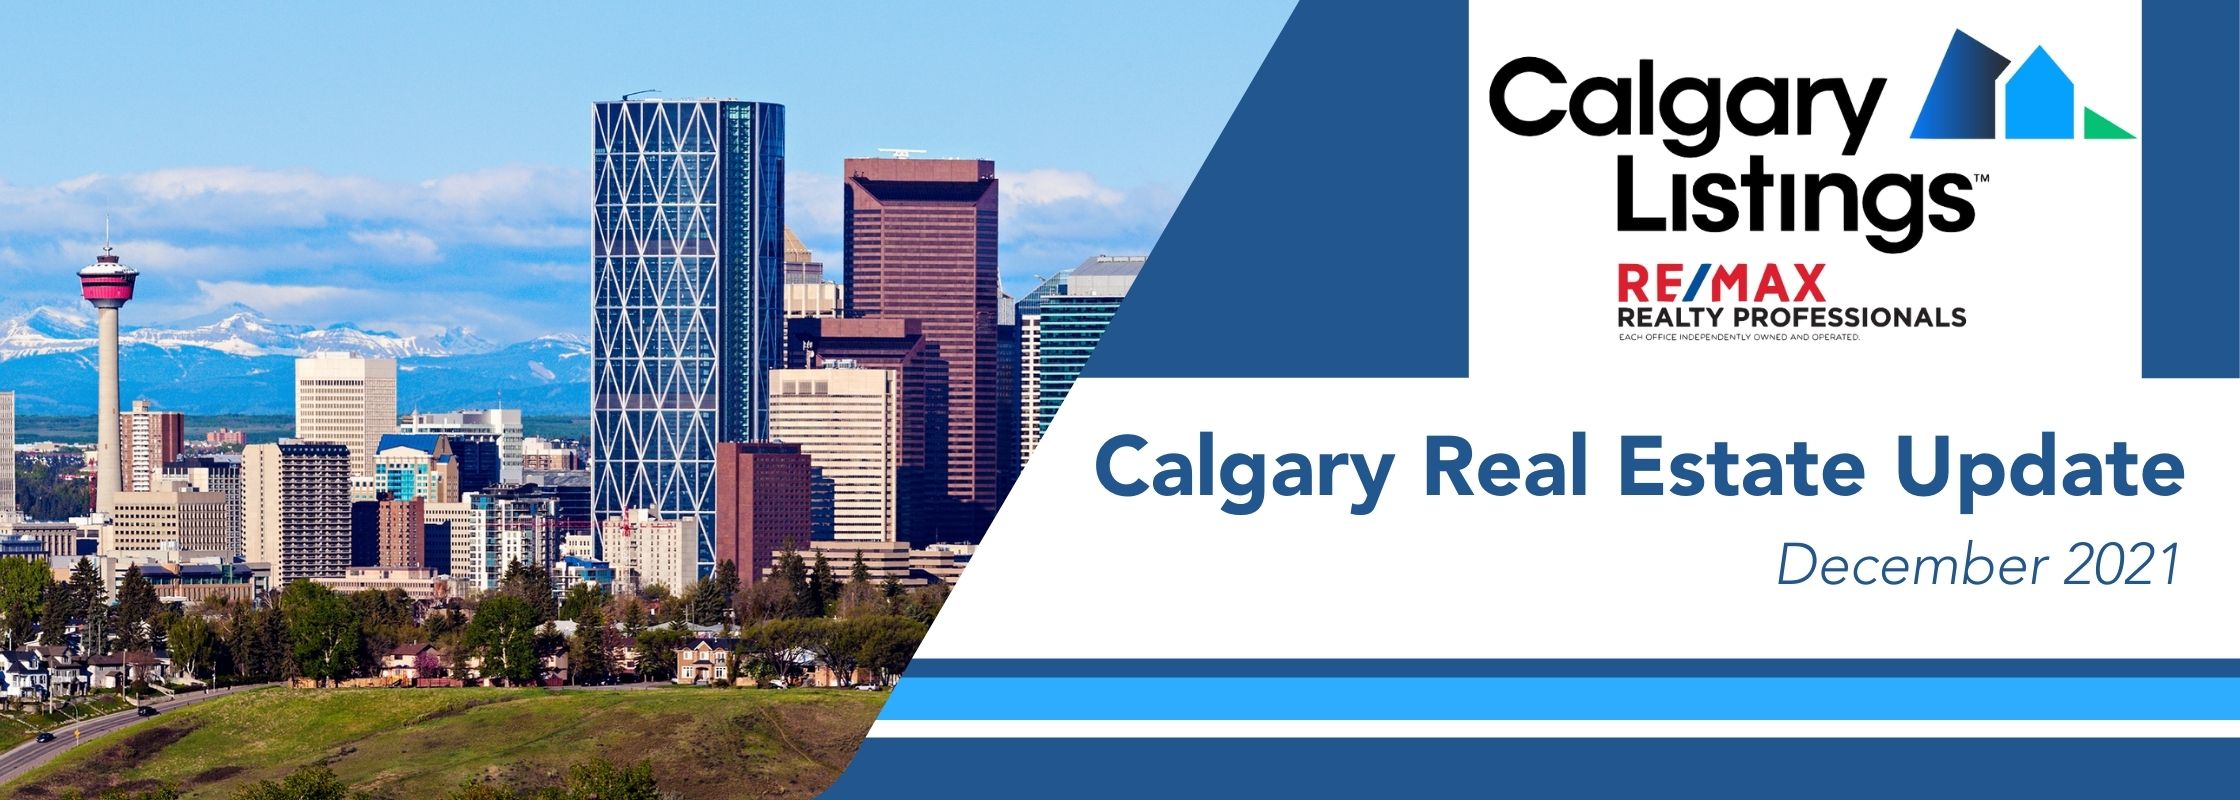 Calgary Real Estate Update December 2021